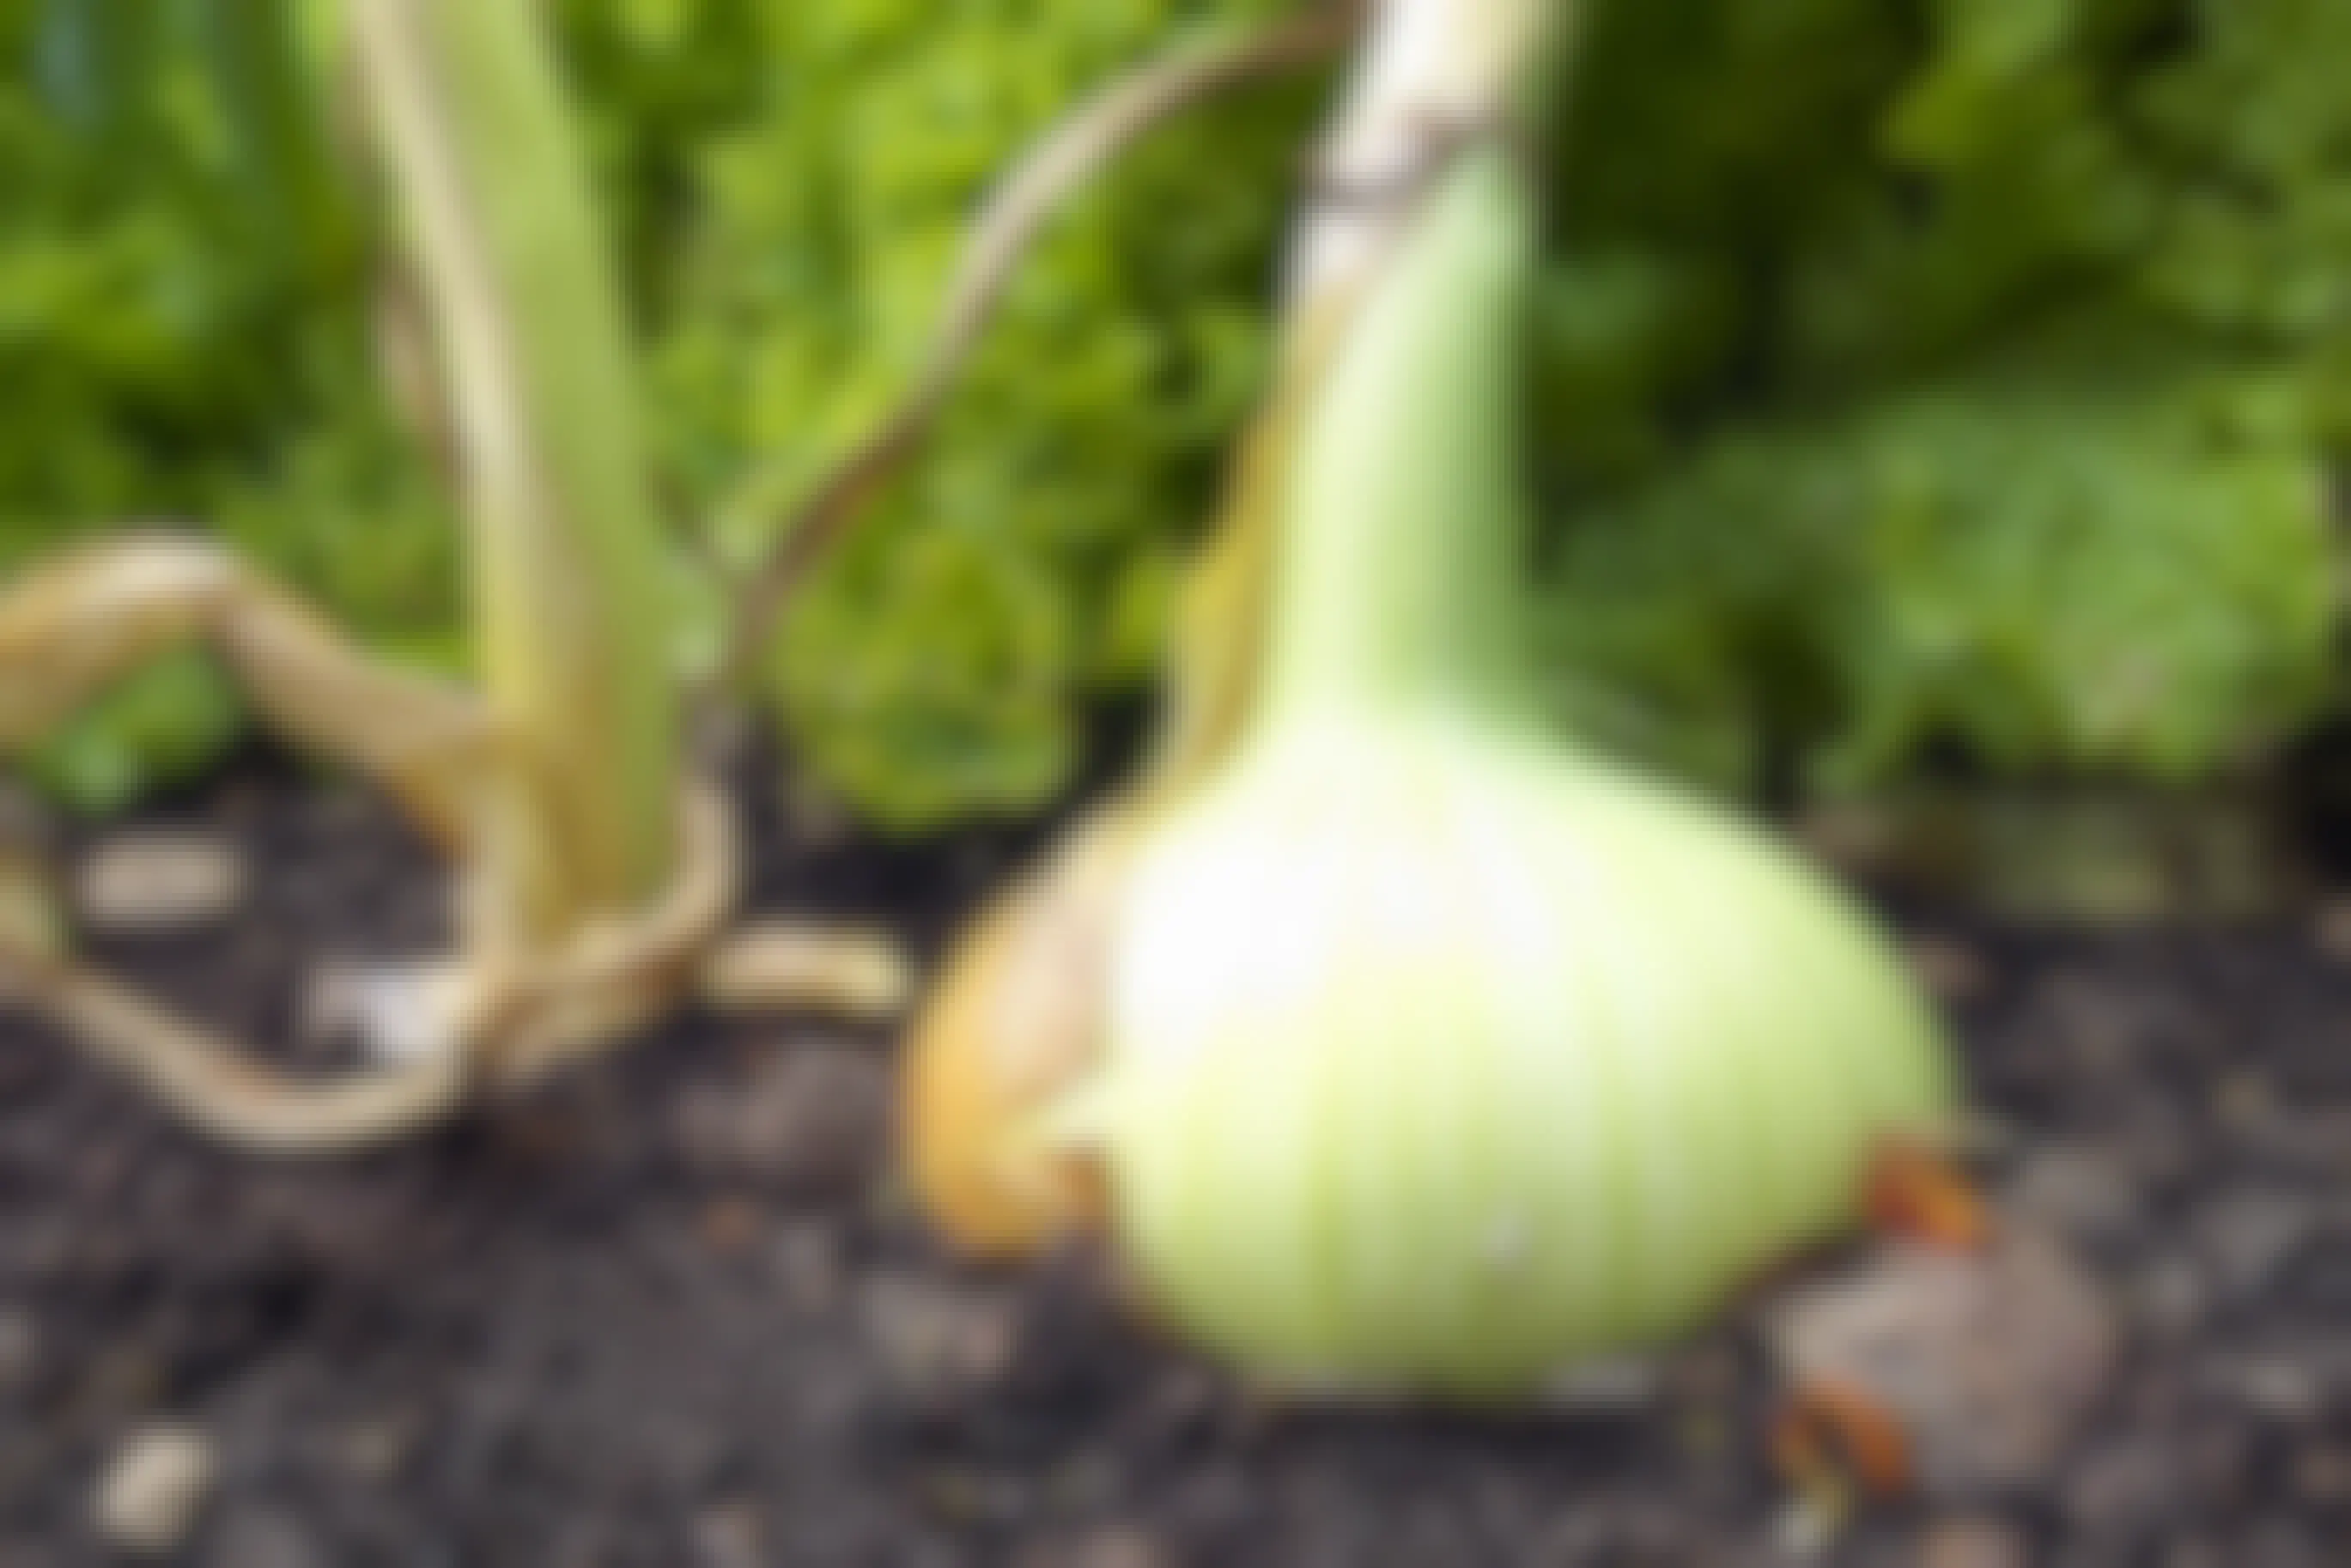 Onion growing in a garden